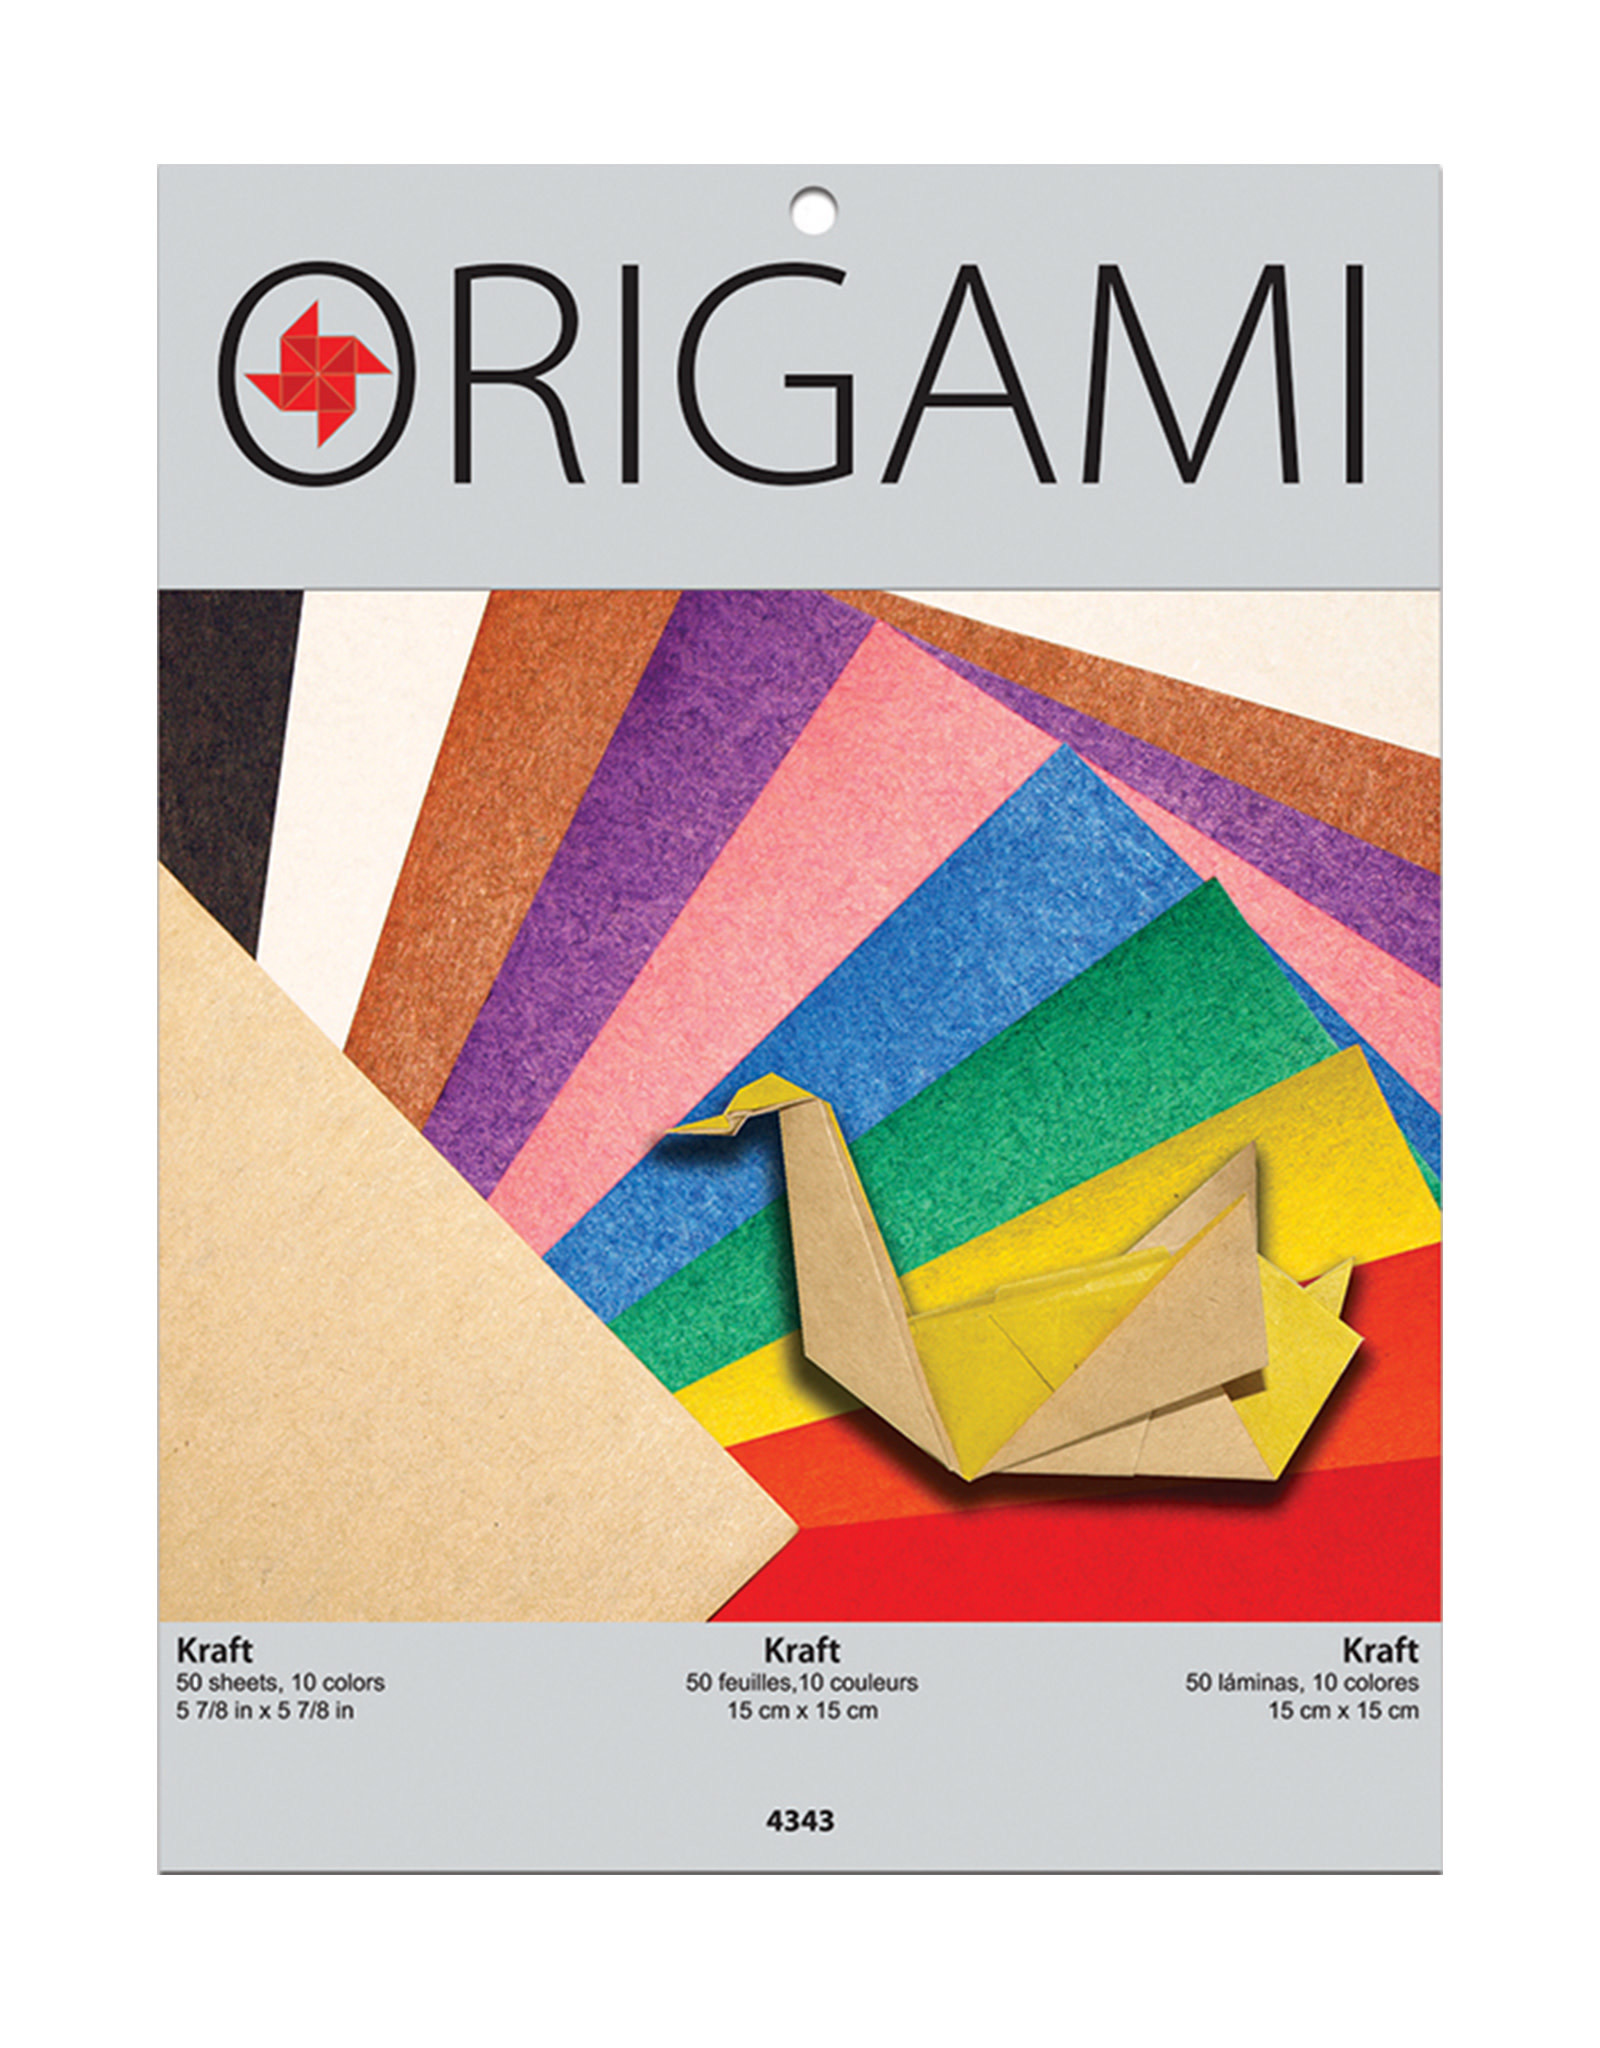 YASUTOMO Yasutomo Origami Paper, Kraft Paper, 50 Sheets